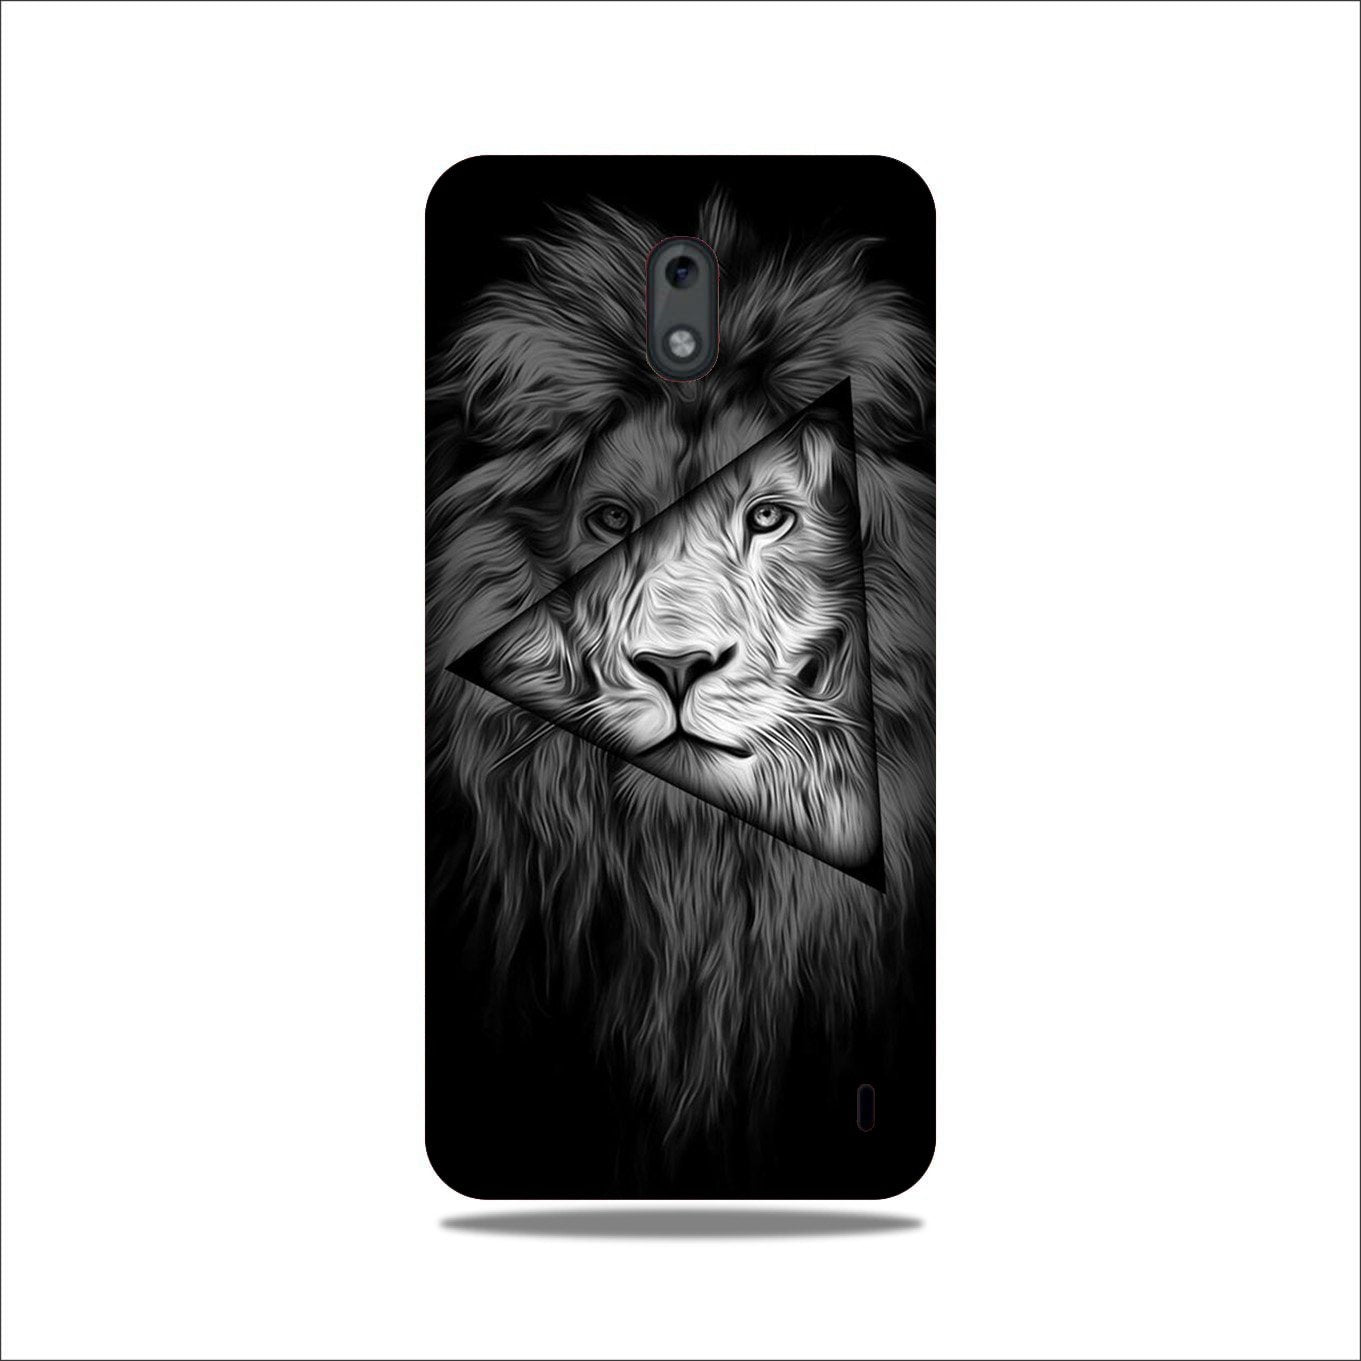 Lion Star Case for Nokia 2.2 (Design No. 226)